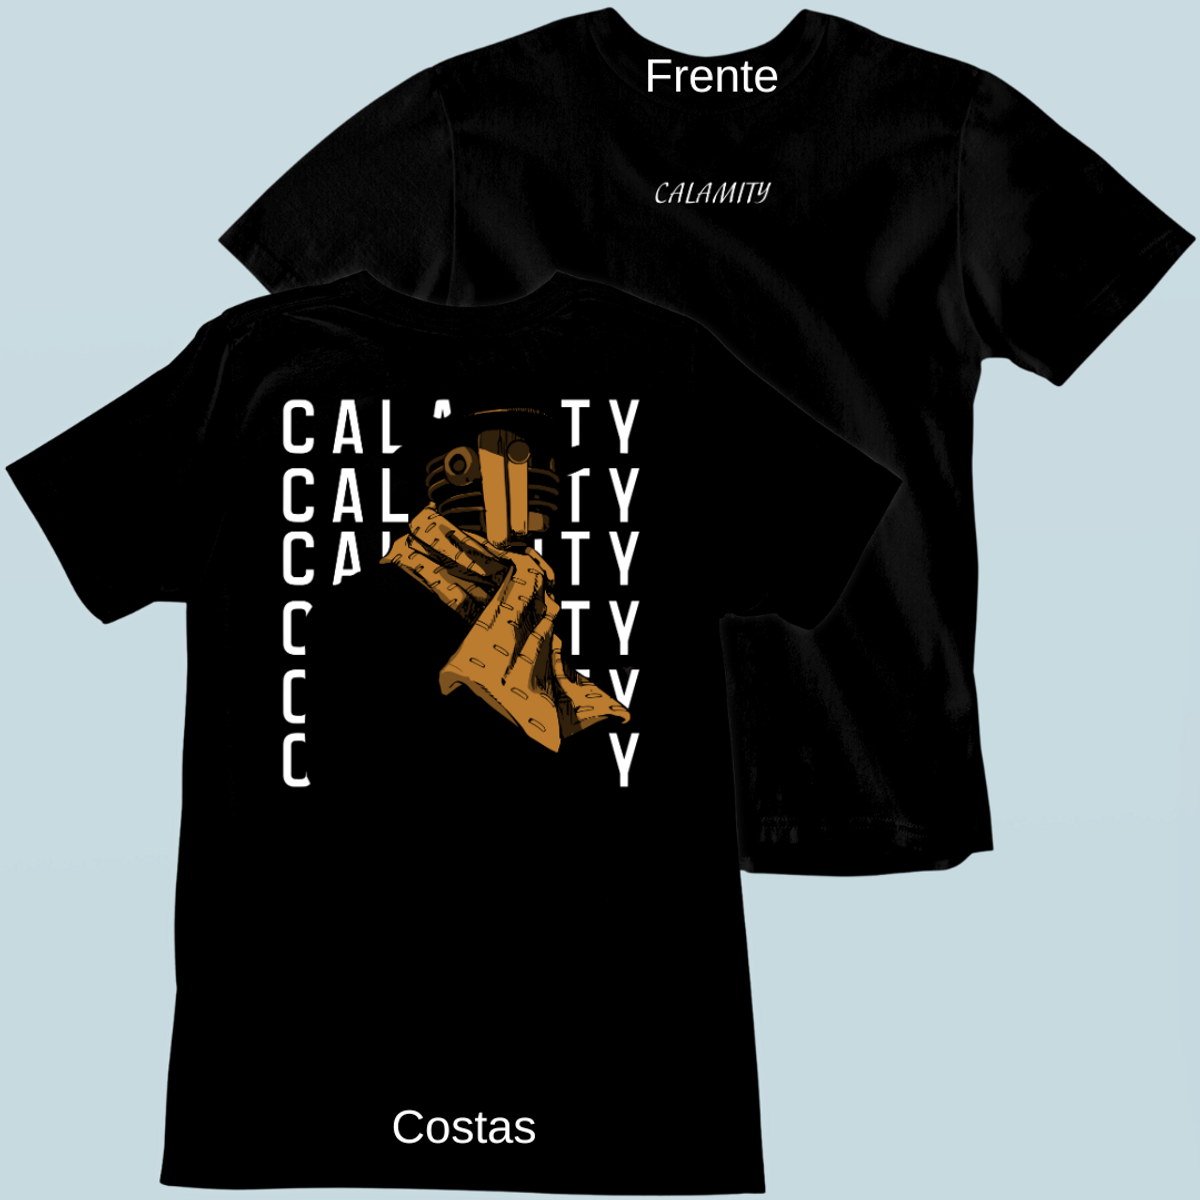 Nome do produto: Camiseta Calamity Frente Costas